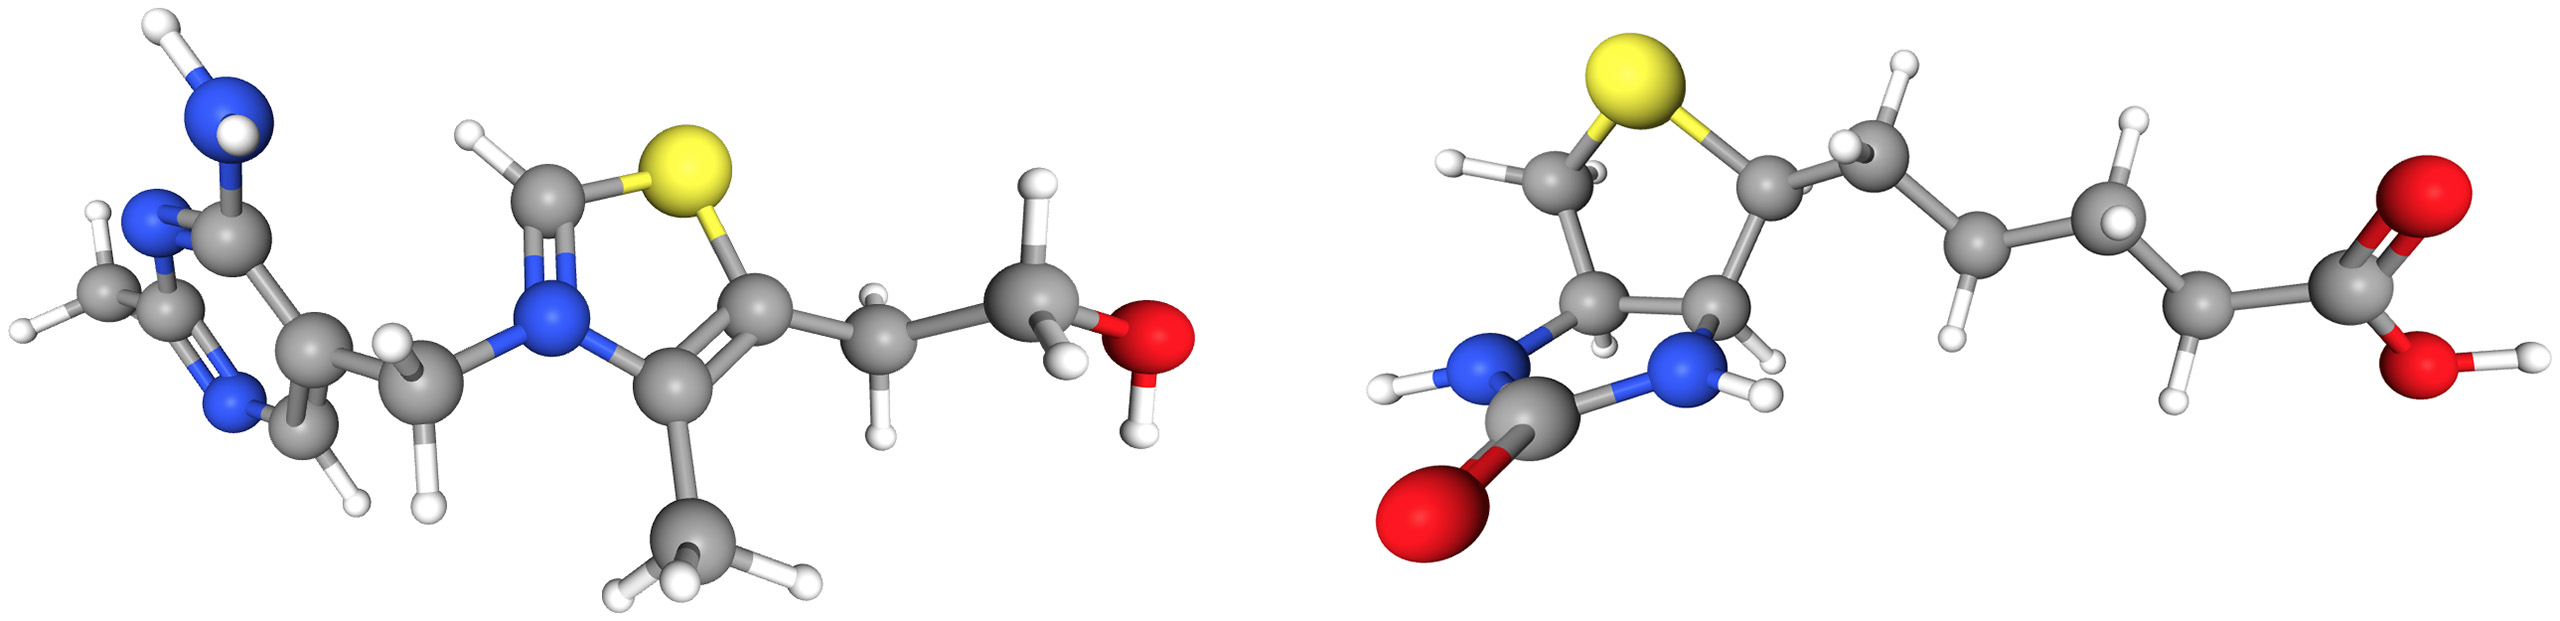 Représentation 3D de thiamine et de biotine